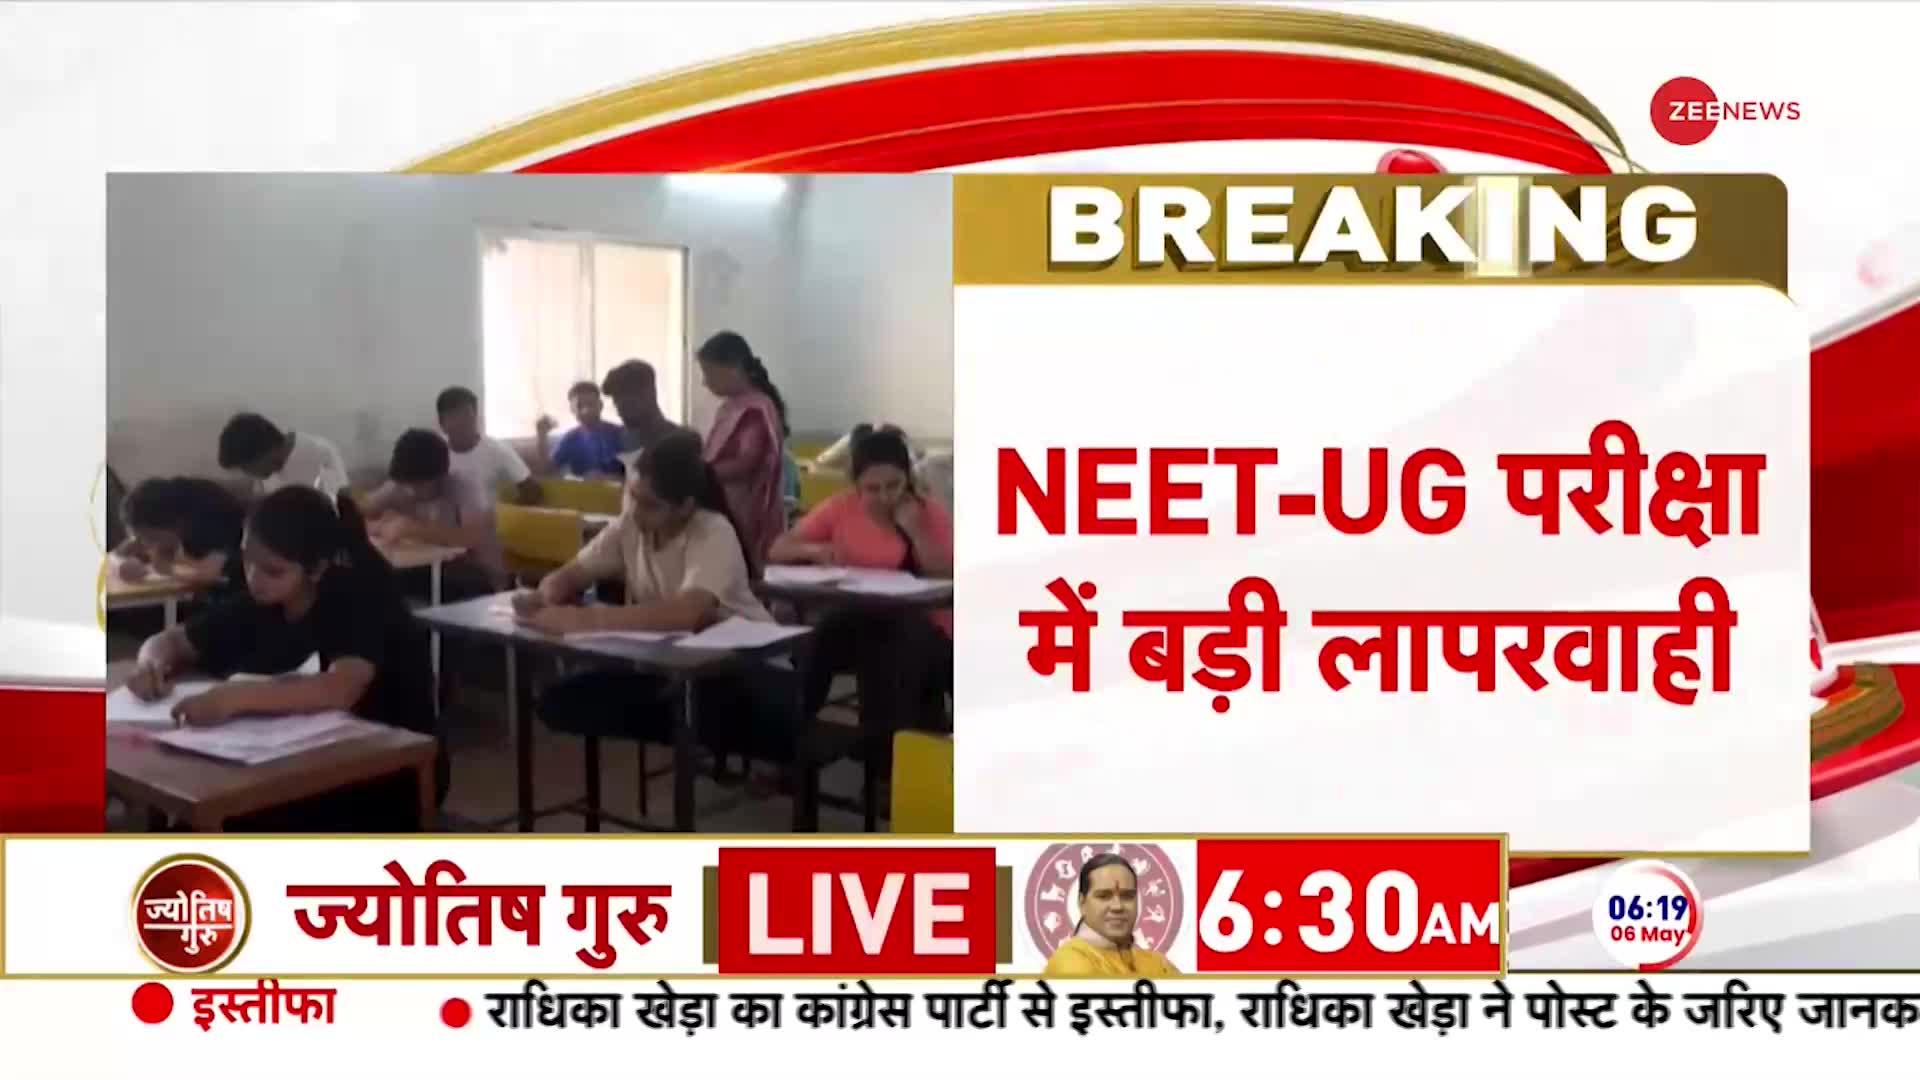 Patna NEET UG Breaking News: छत्तीसगढ़ के बालोद में बंटे गलत पेपर